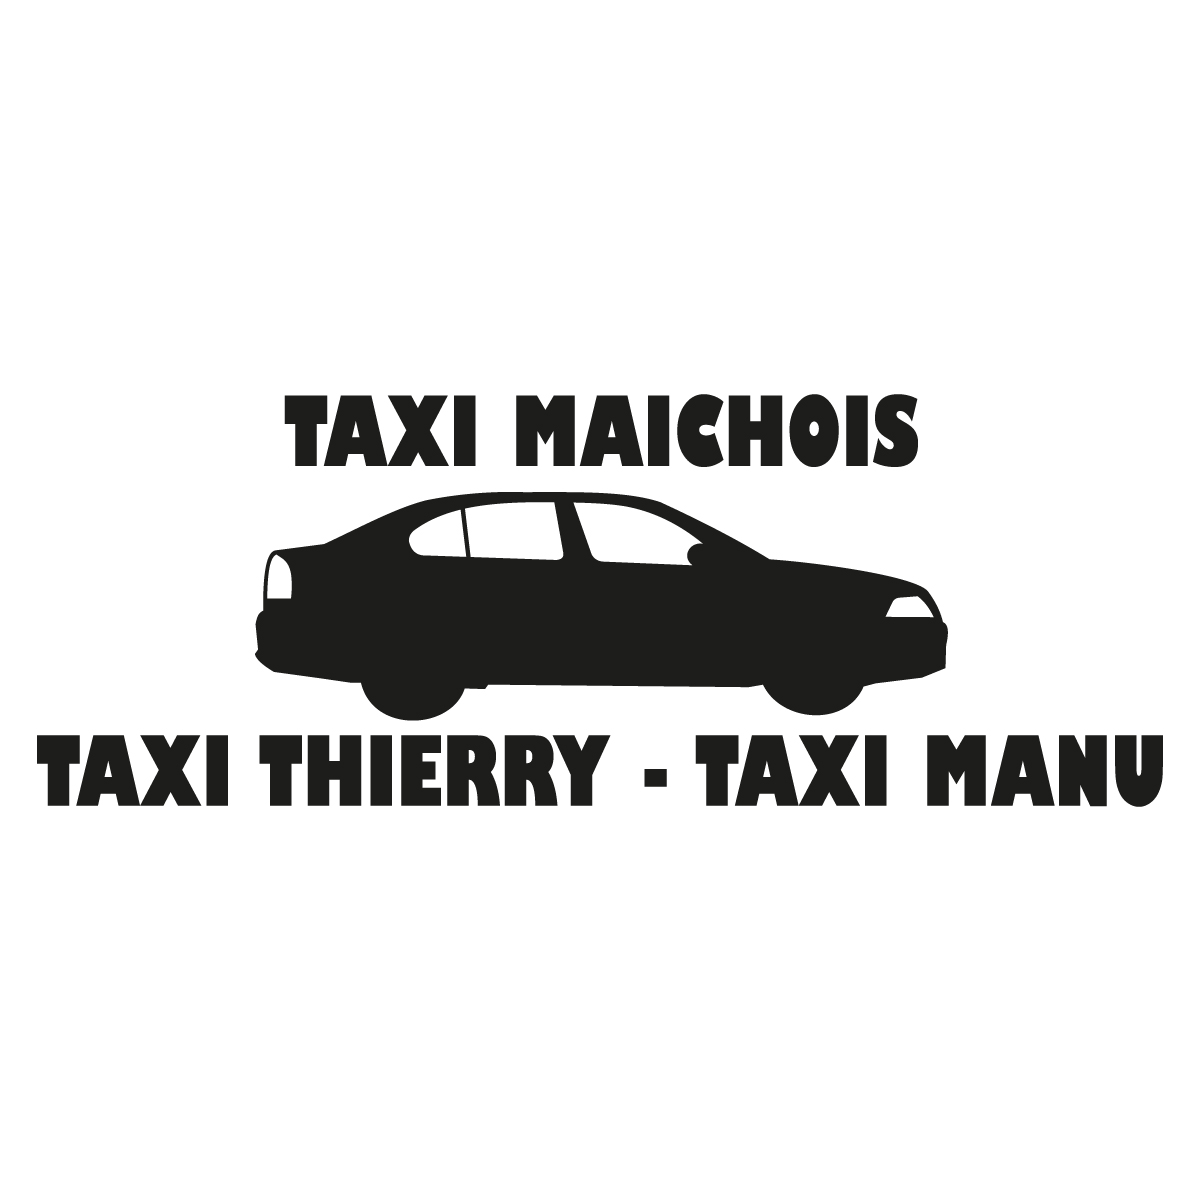 (c) Taxi-maichois.fr